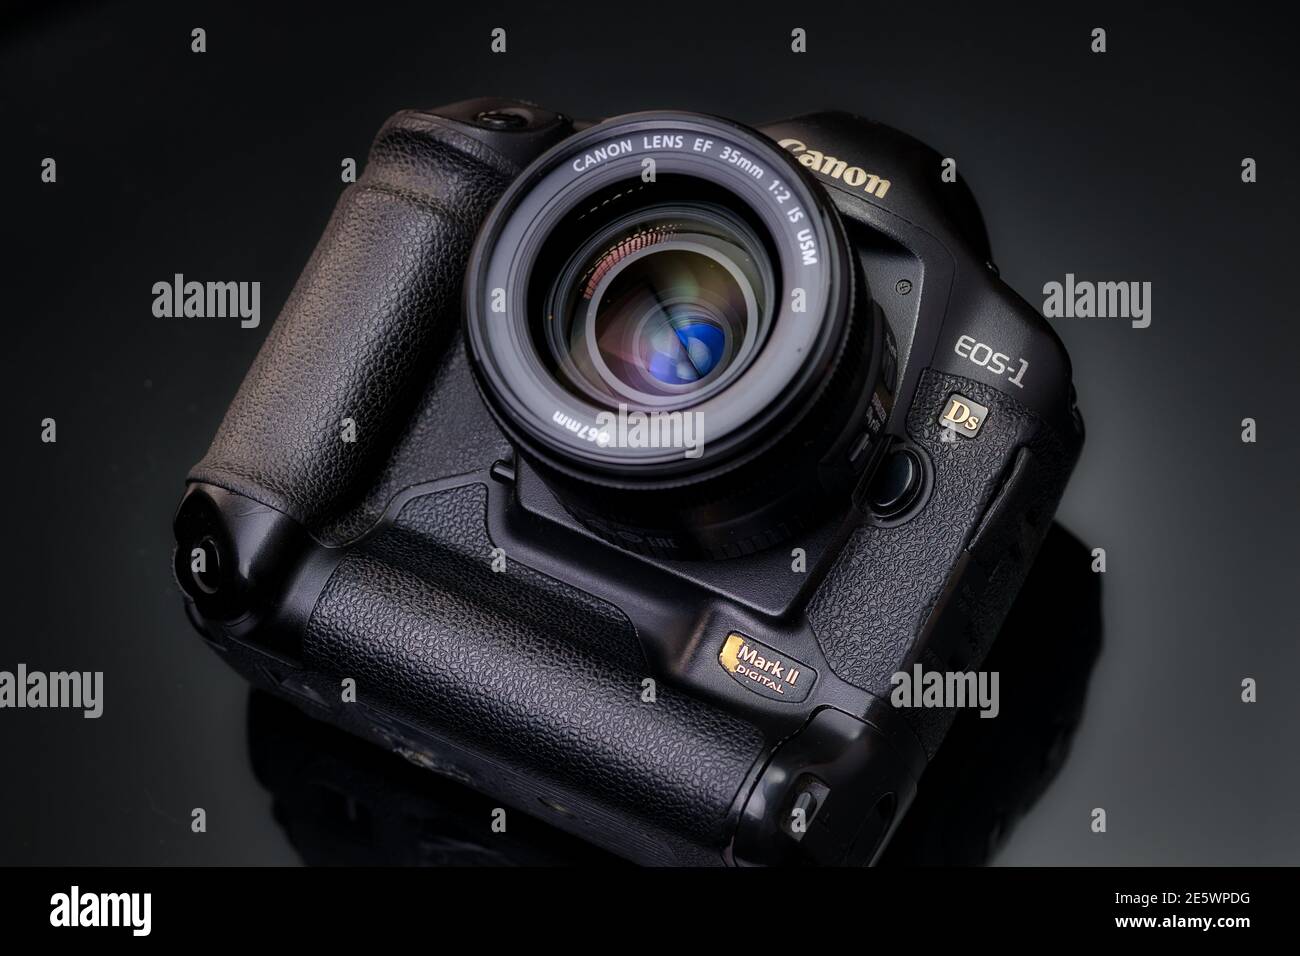 RUSSLAND, BARNAUL-21. NOVEMBER 2020: Canon EOS 1ds markieren 2 SLR-Kamera auf schwarzem Hintergrund Stockfoto